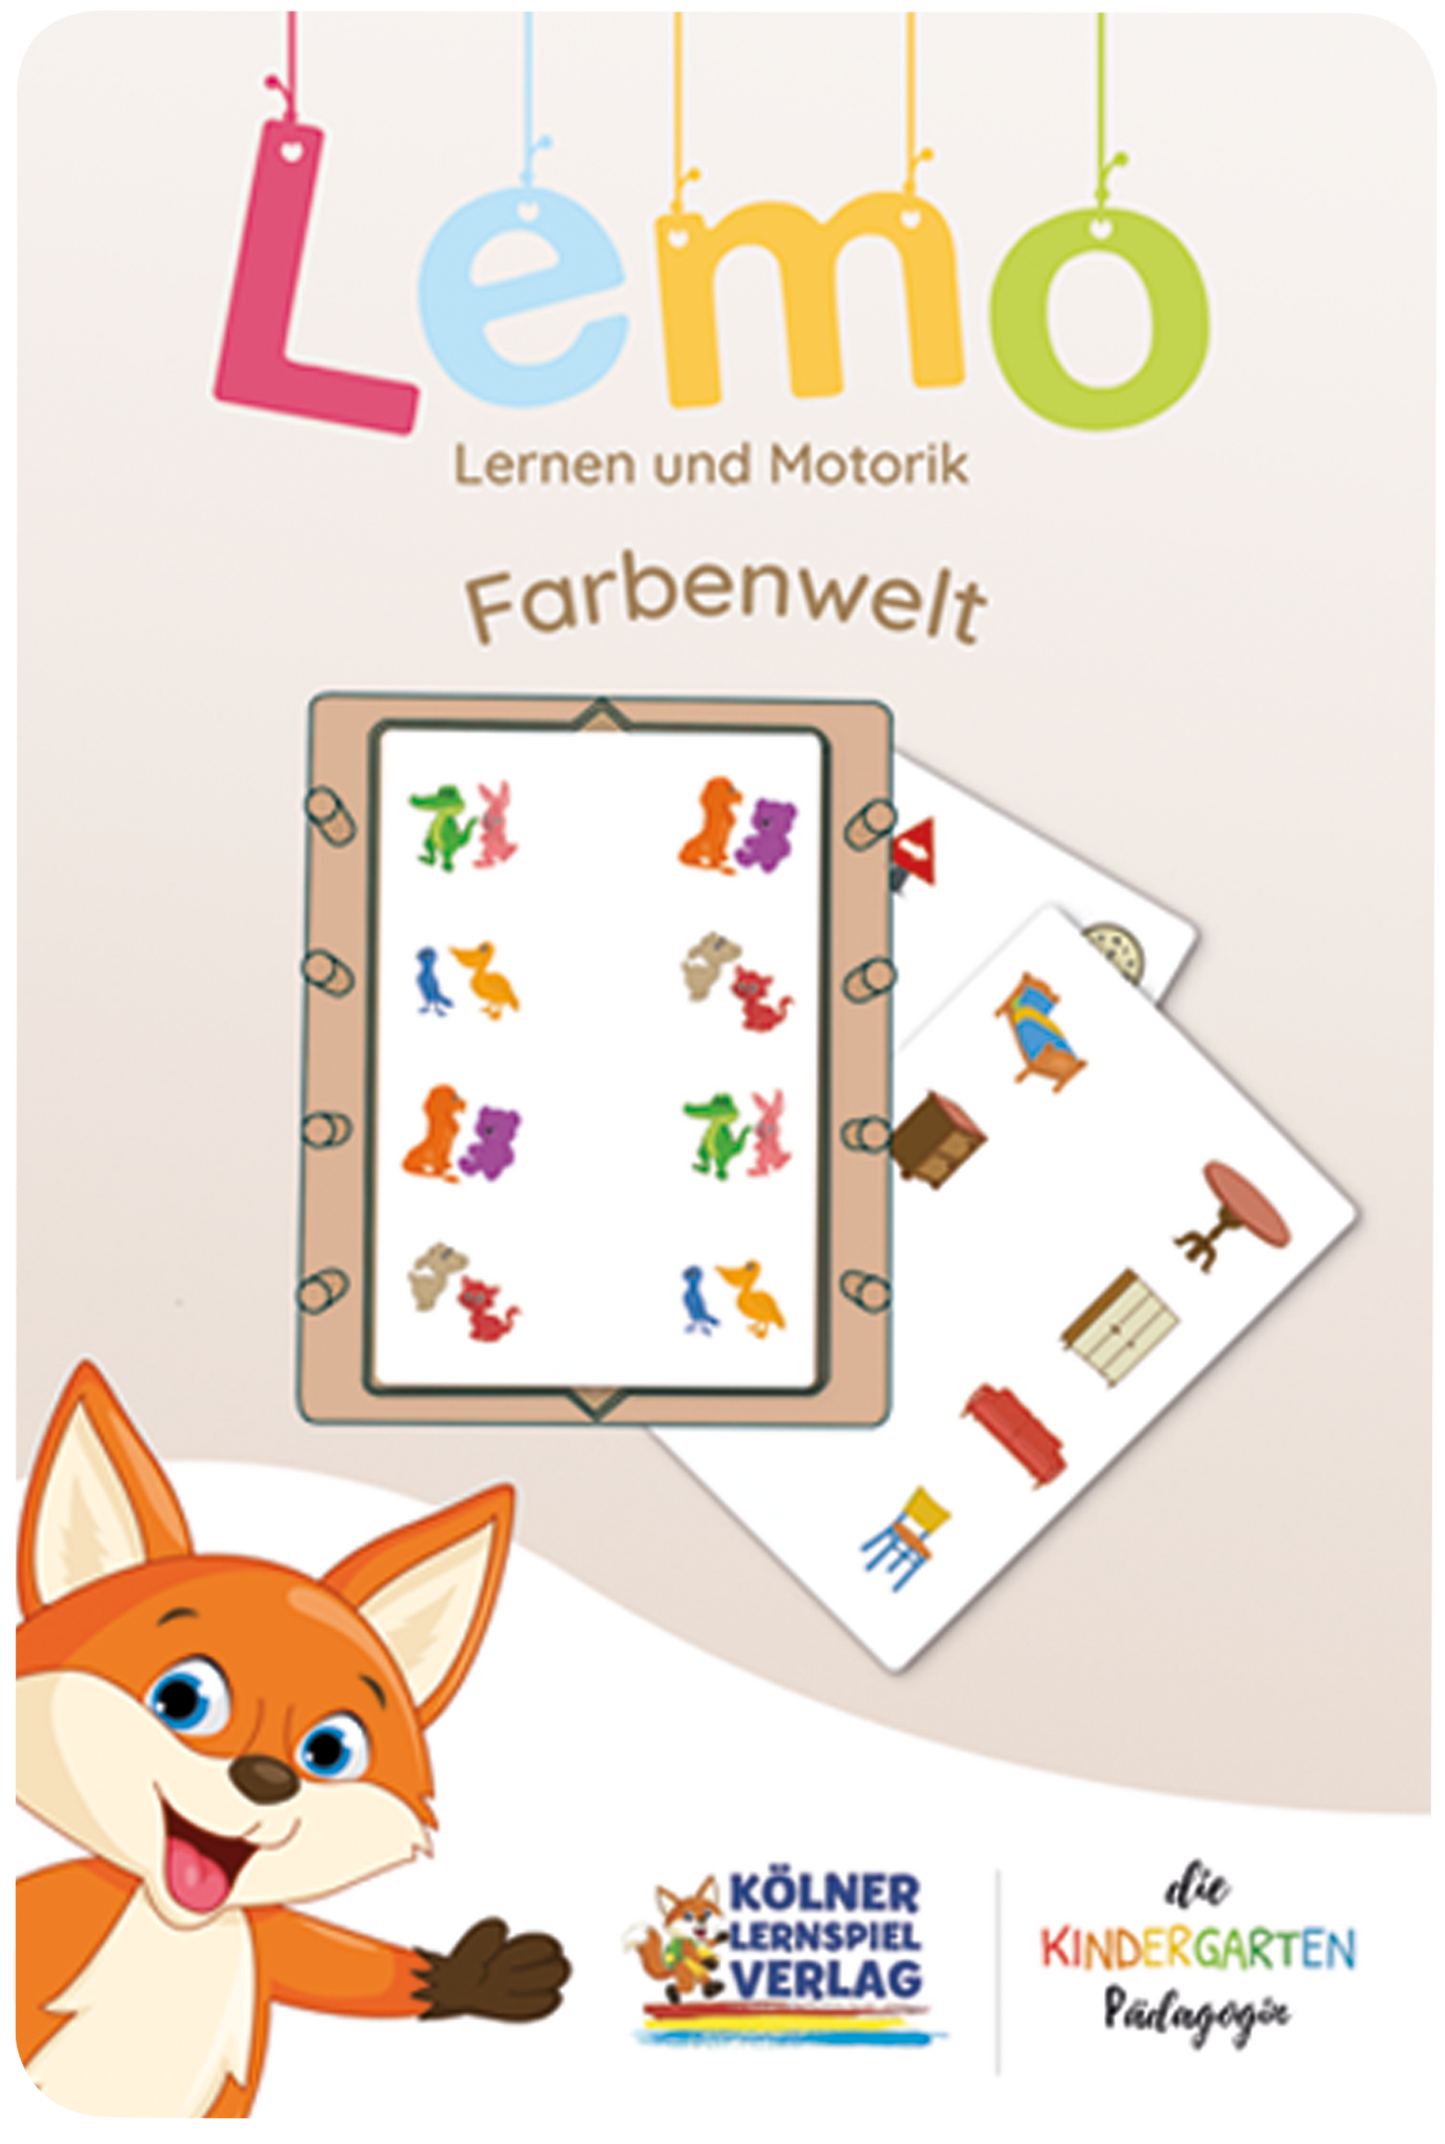 Lemo Kartensatz Farbenwelt (ab 4 Jahren)